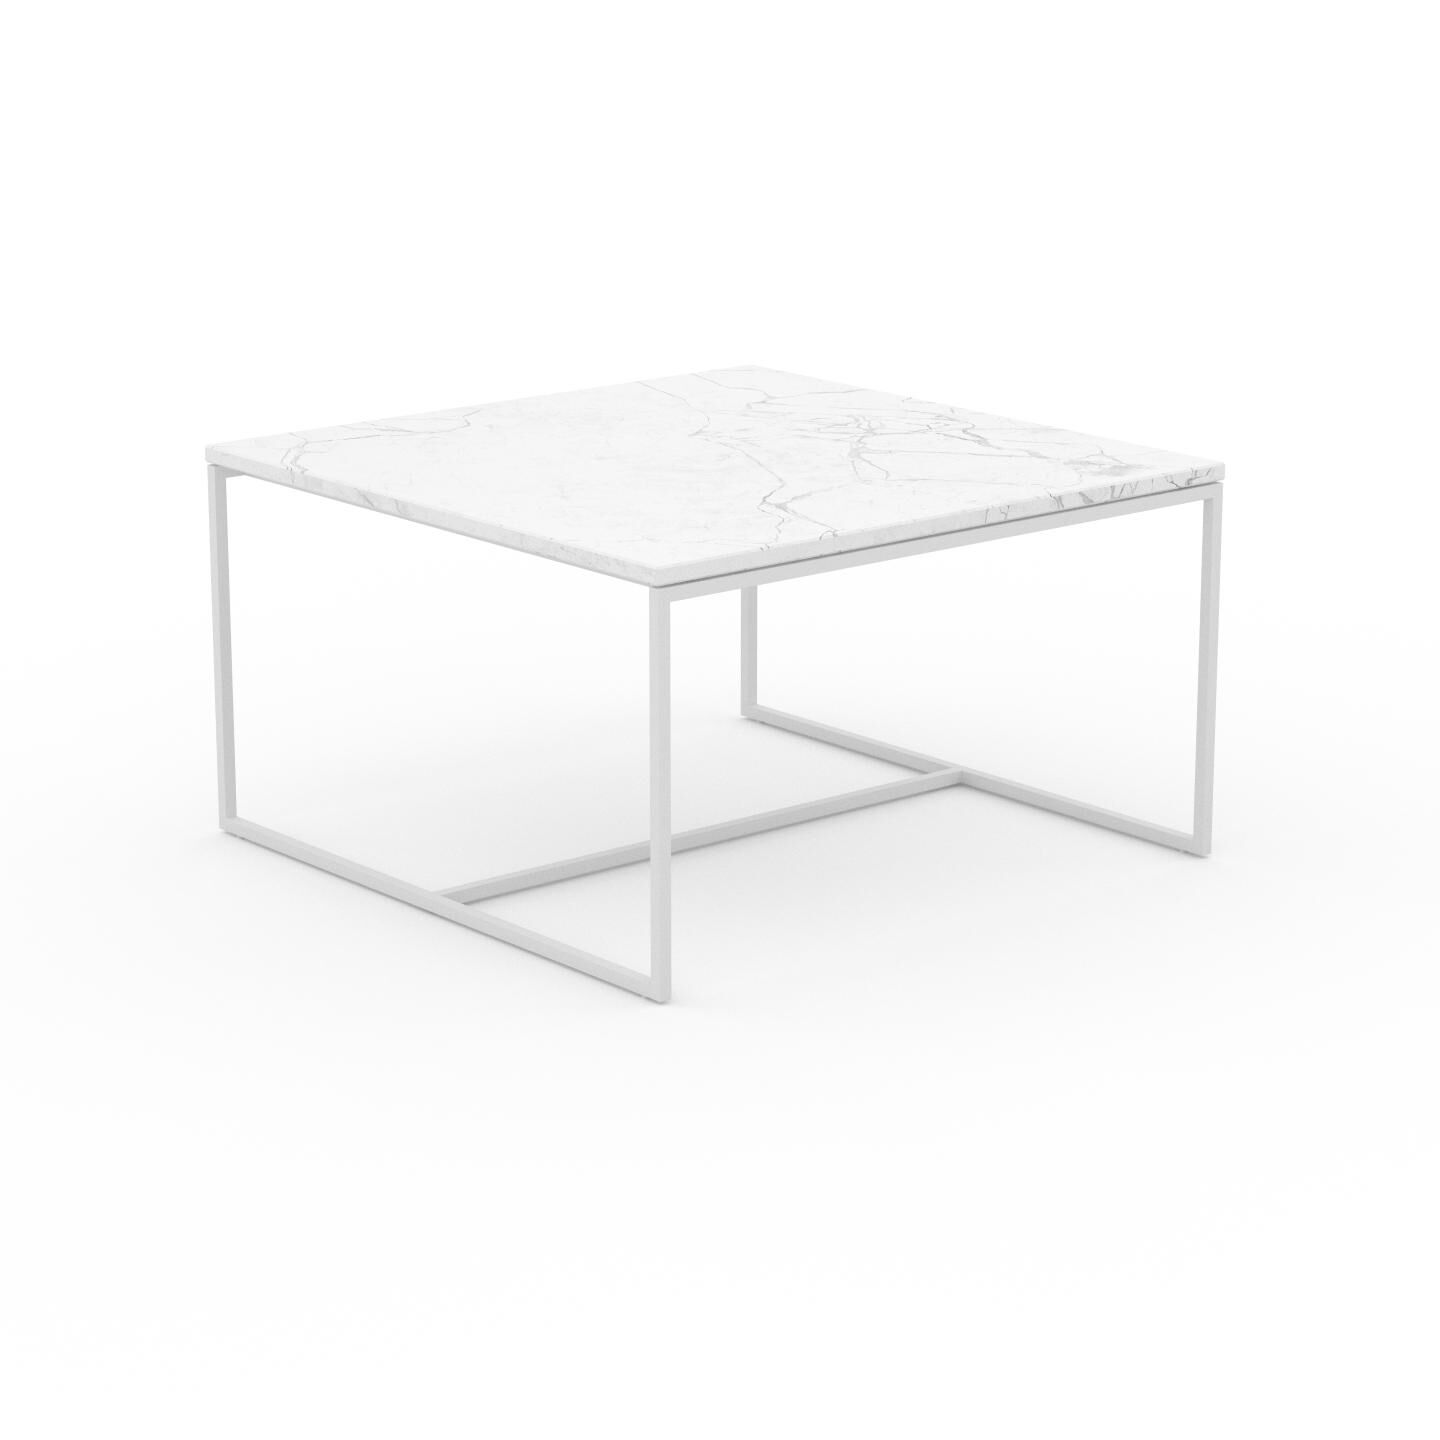 MYCS Beistelltisch Marmor, Weißer Carrara - Eleganter Nachttisch: Hochwertige Materialien, einzigartiges Design - 81 x 46 x 81 cm, Komplett anpassbar